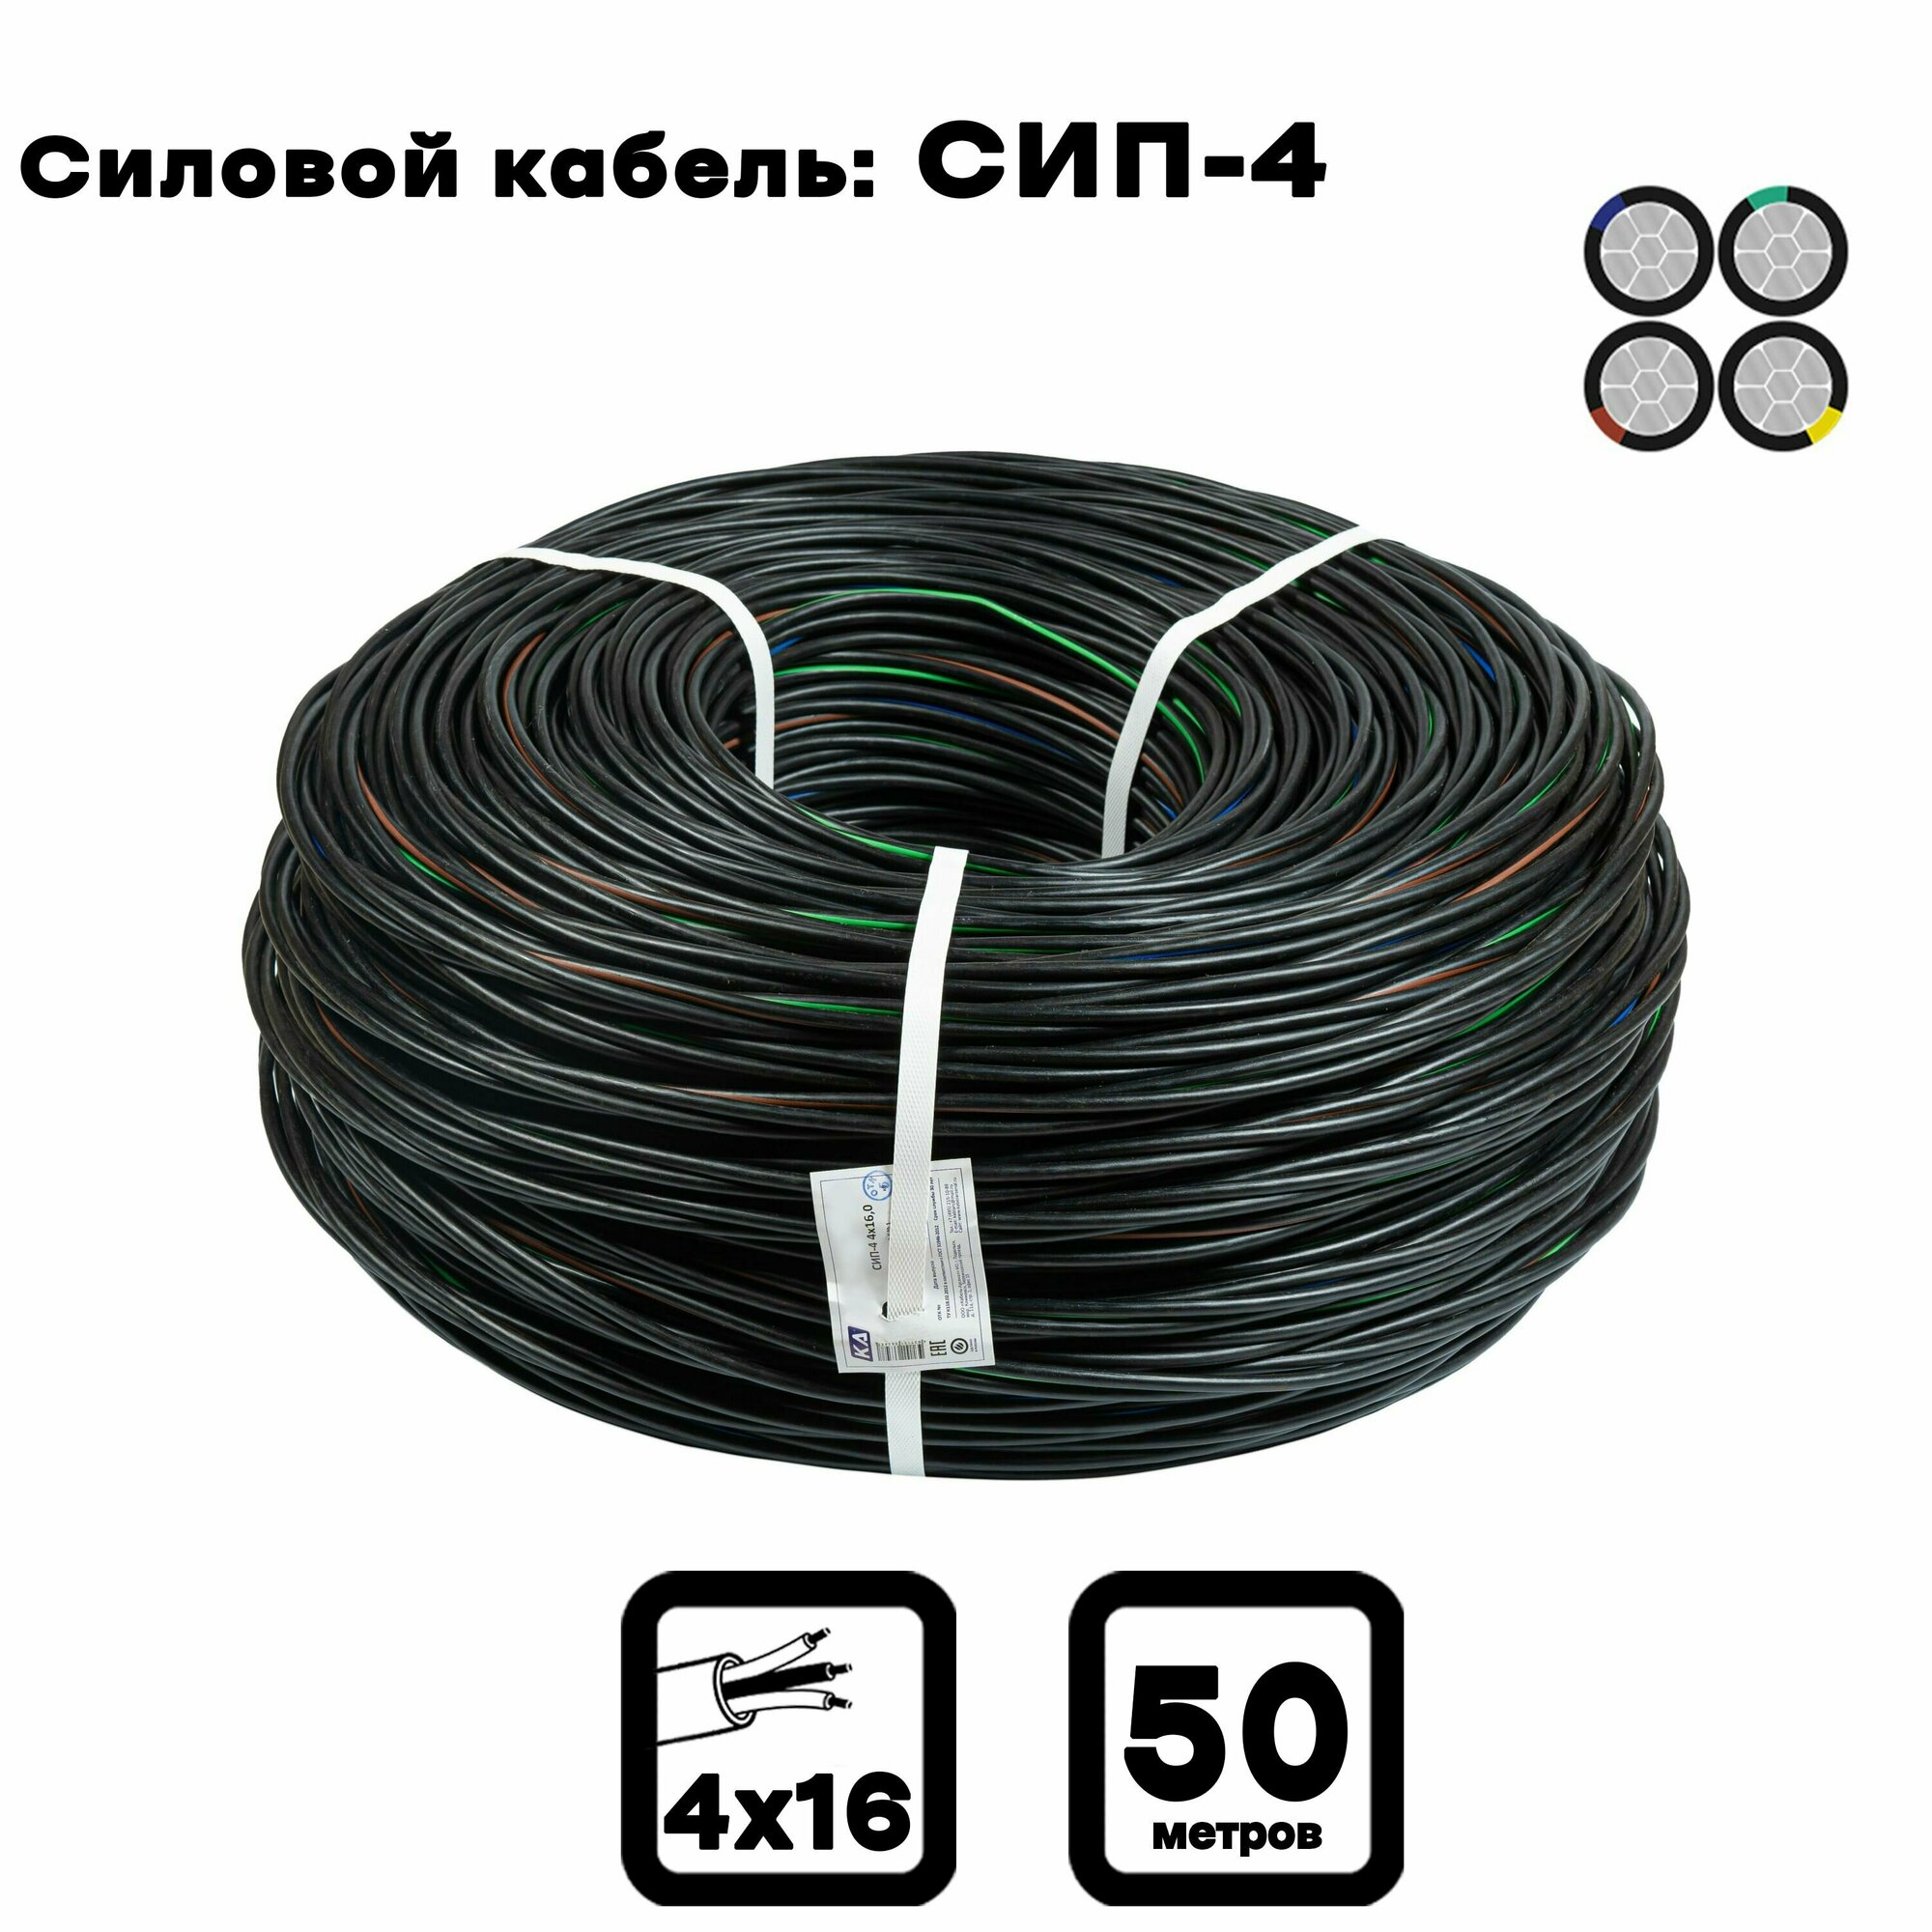 Силовой кабель СИП-4 4 x 25 мм 40 м. (Московский кабельный завод)